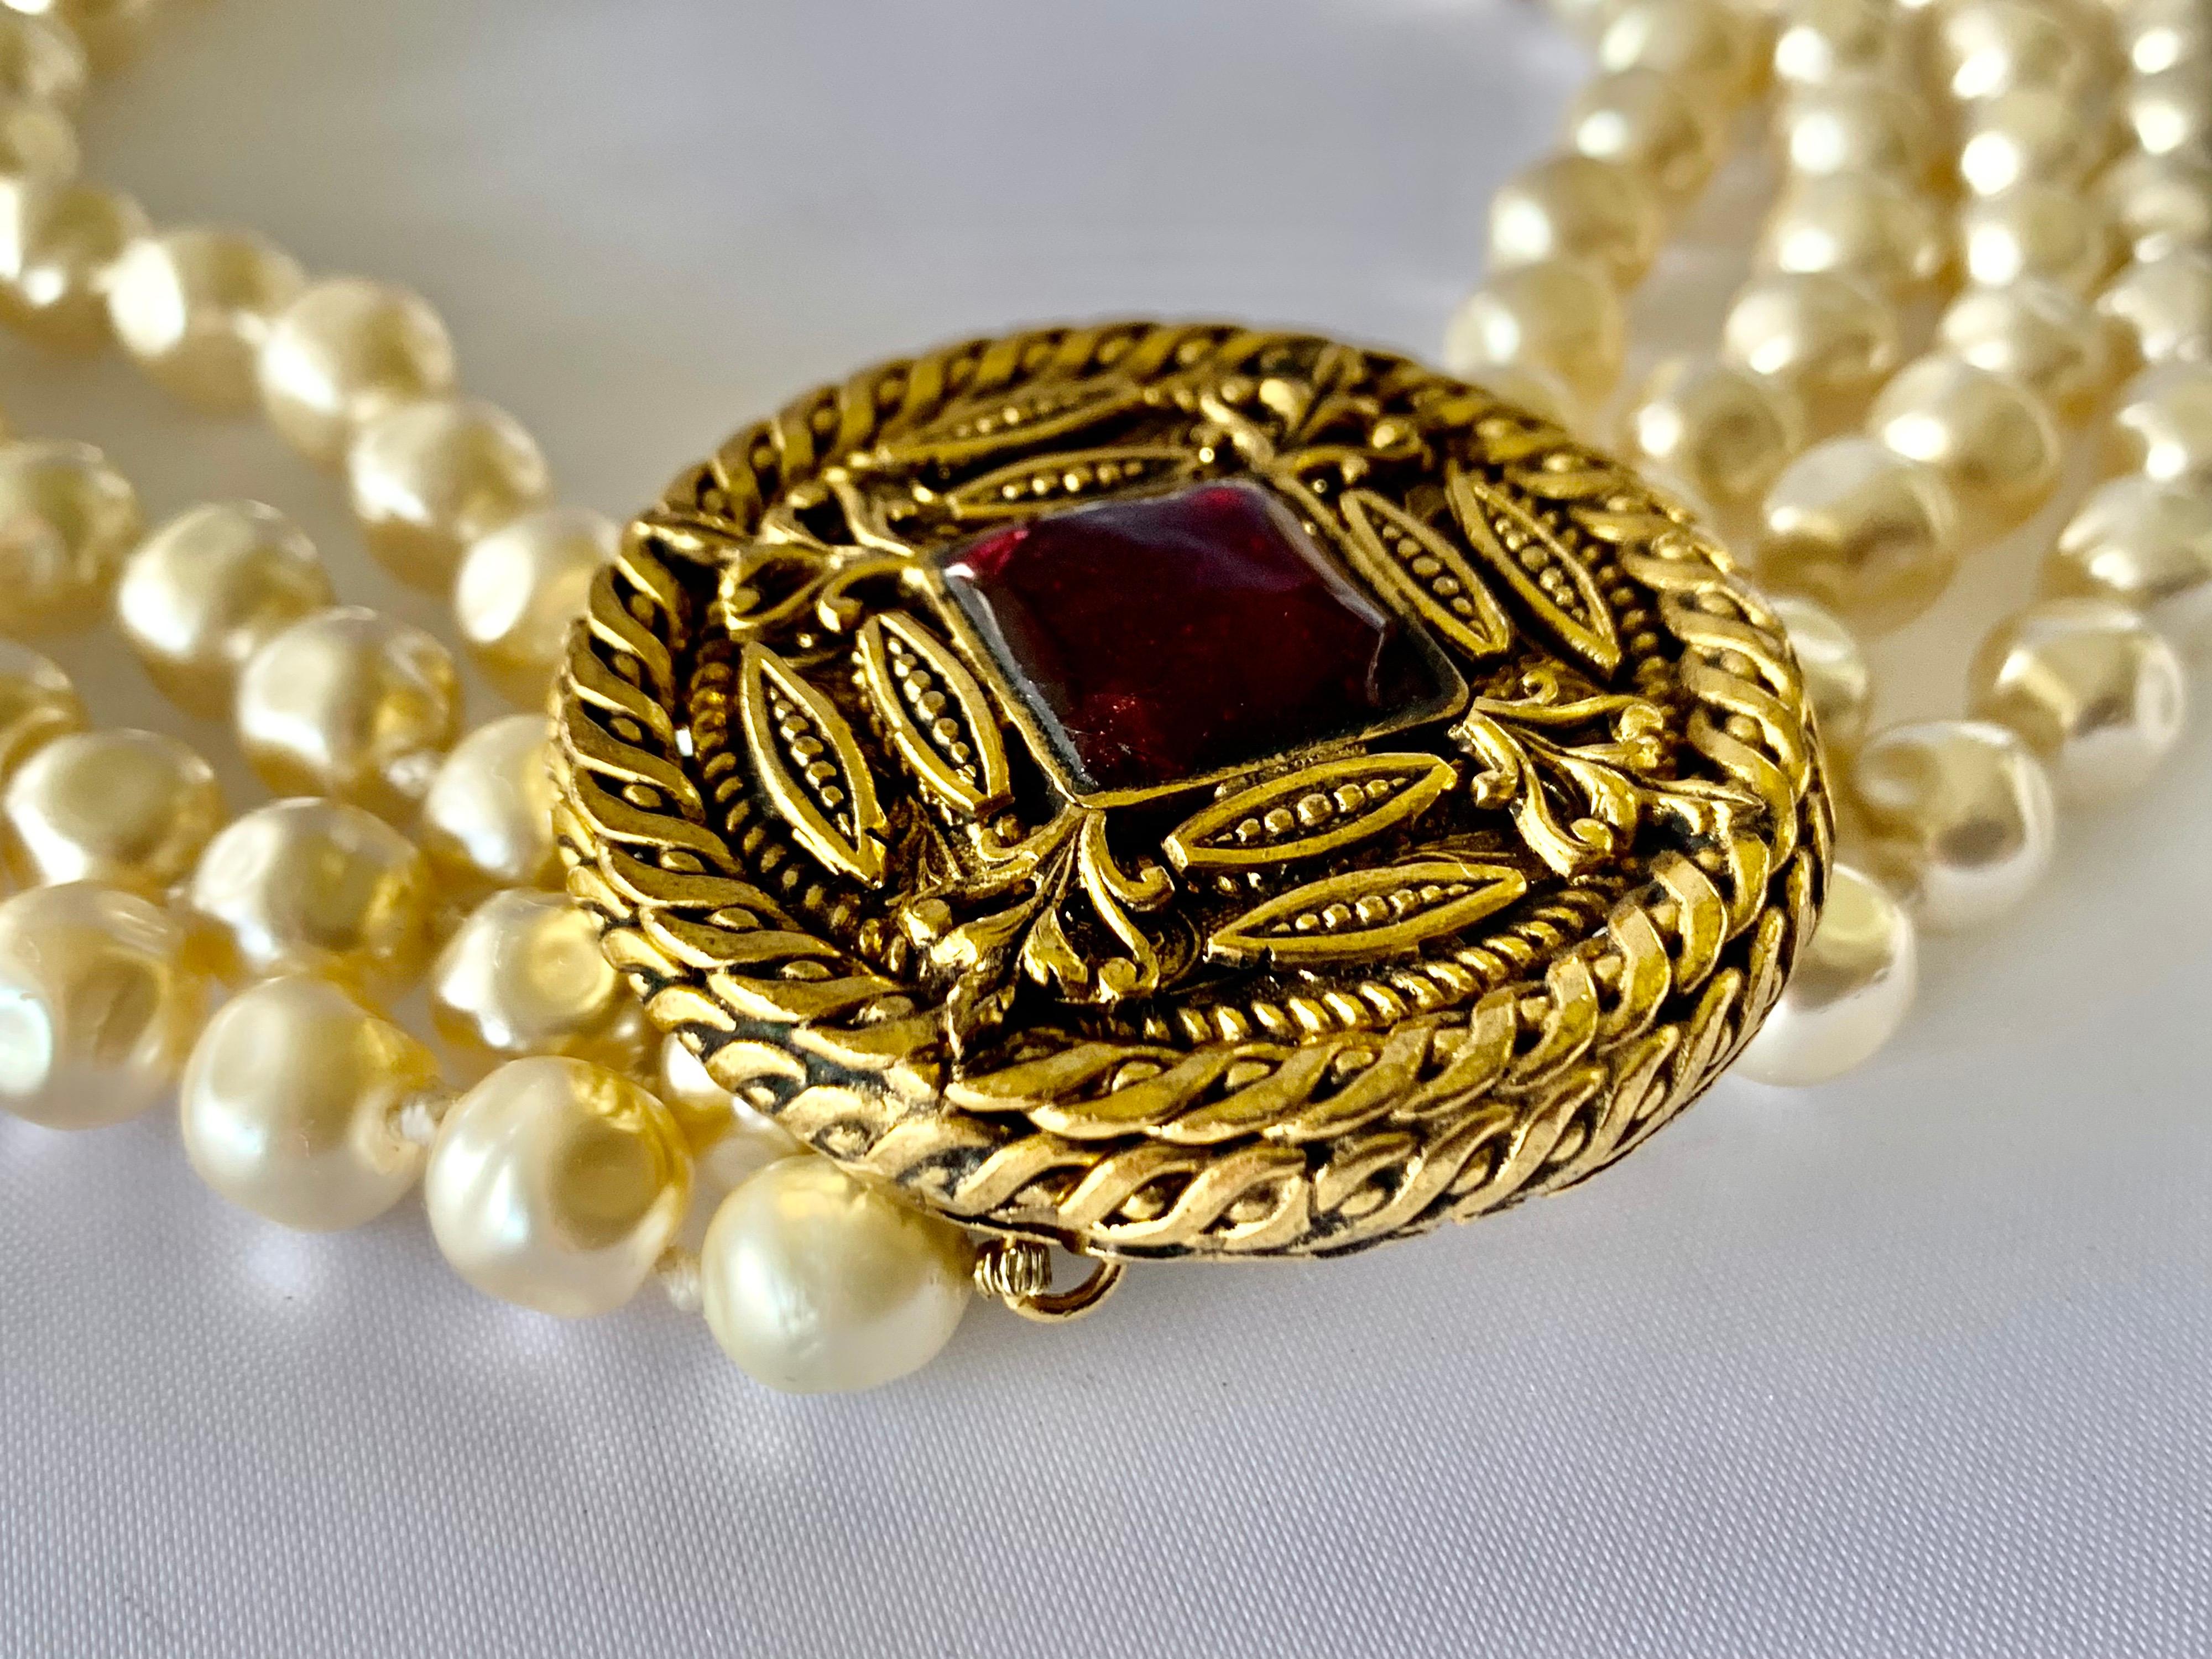 Collier vintage Coco Chanel - composé de huit rangs de grosses perles baroques avec un grand médaillon rond doré en métal doré avec un gripoix rouge en pate de verre.  cabochon en verre fondu coulé. Signé Chanel 1984. 